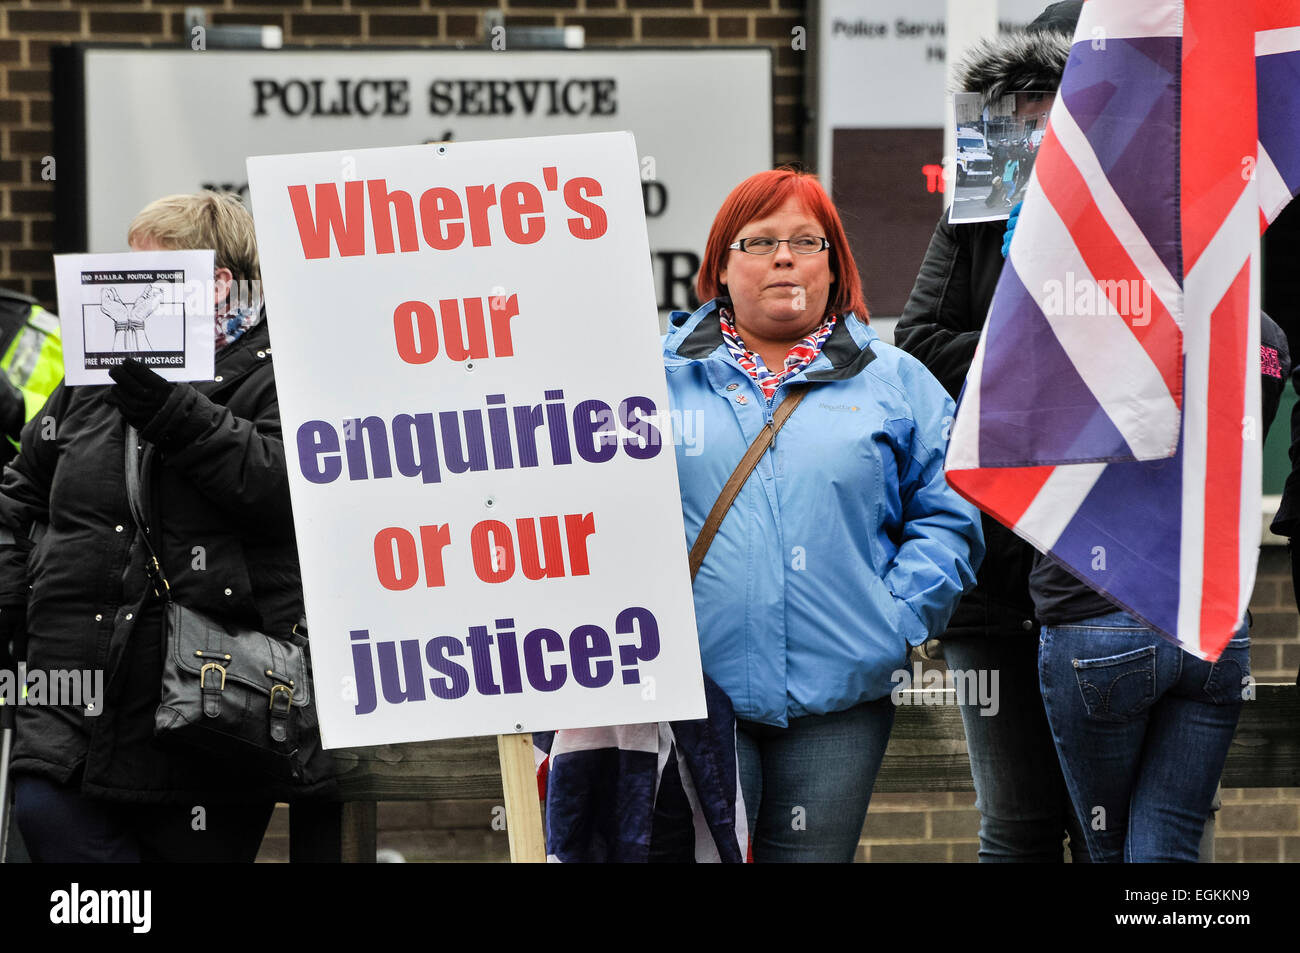 23/02/2013, Belfast, Irlanda del Nord. La donna tiene un banner dicendo "Dov'è [sic] le nostre indagini o la nostra giustizia?" durante una bandiera di protesta PSNI fuori sede, seguenti asserzioni della brutalità della polizia in occasione di precedenti manifestazioni di protesta. Foto Stock